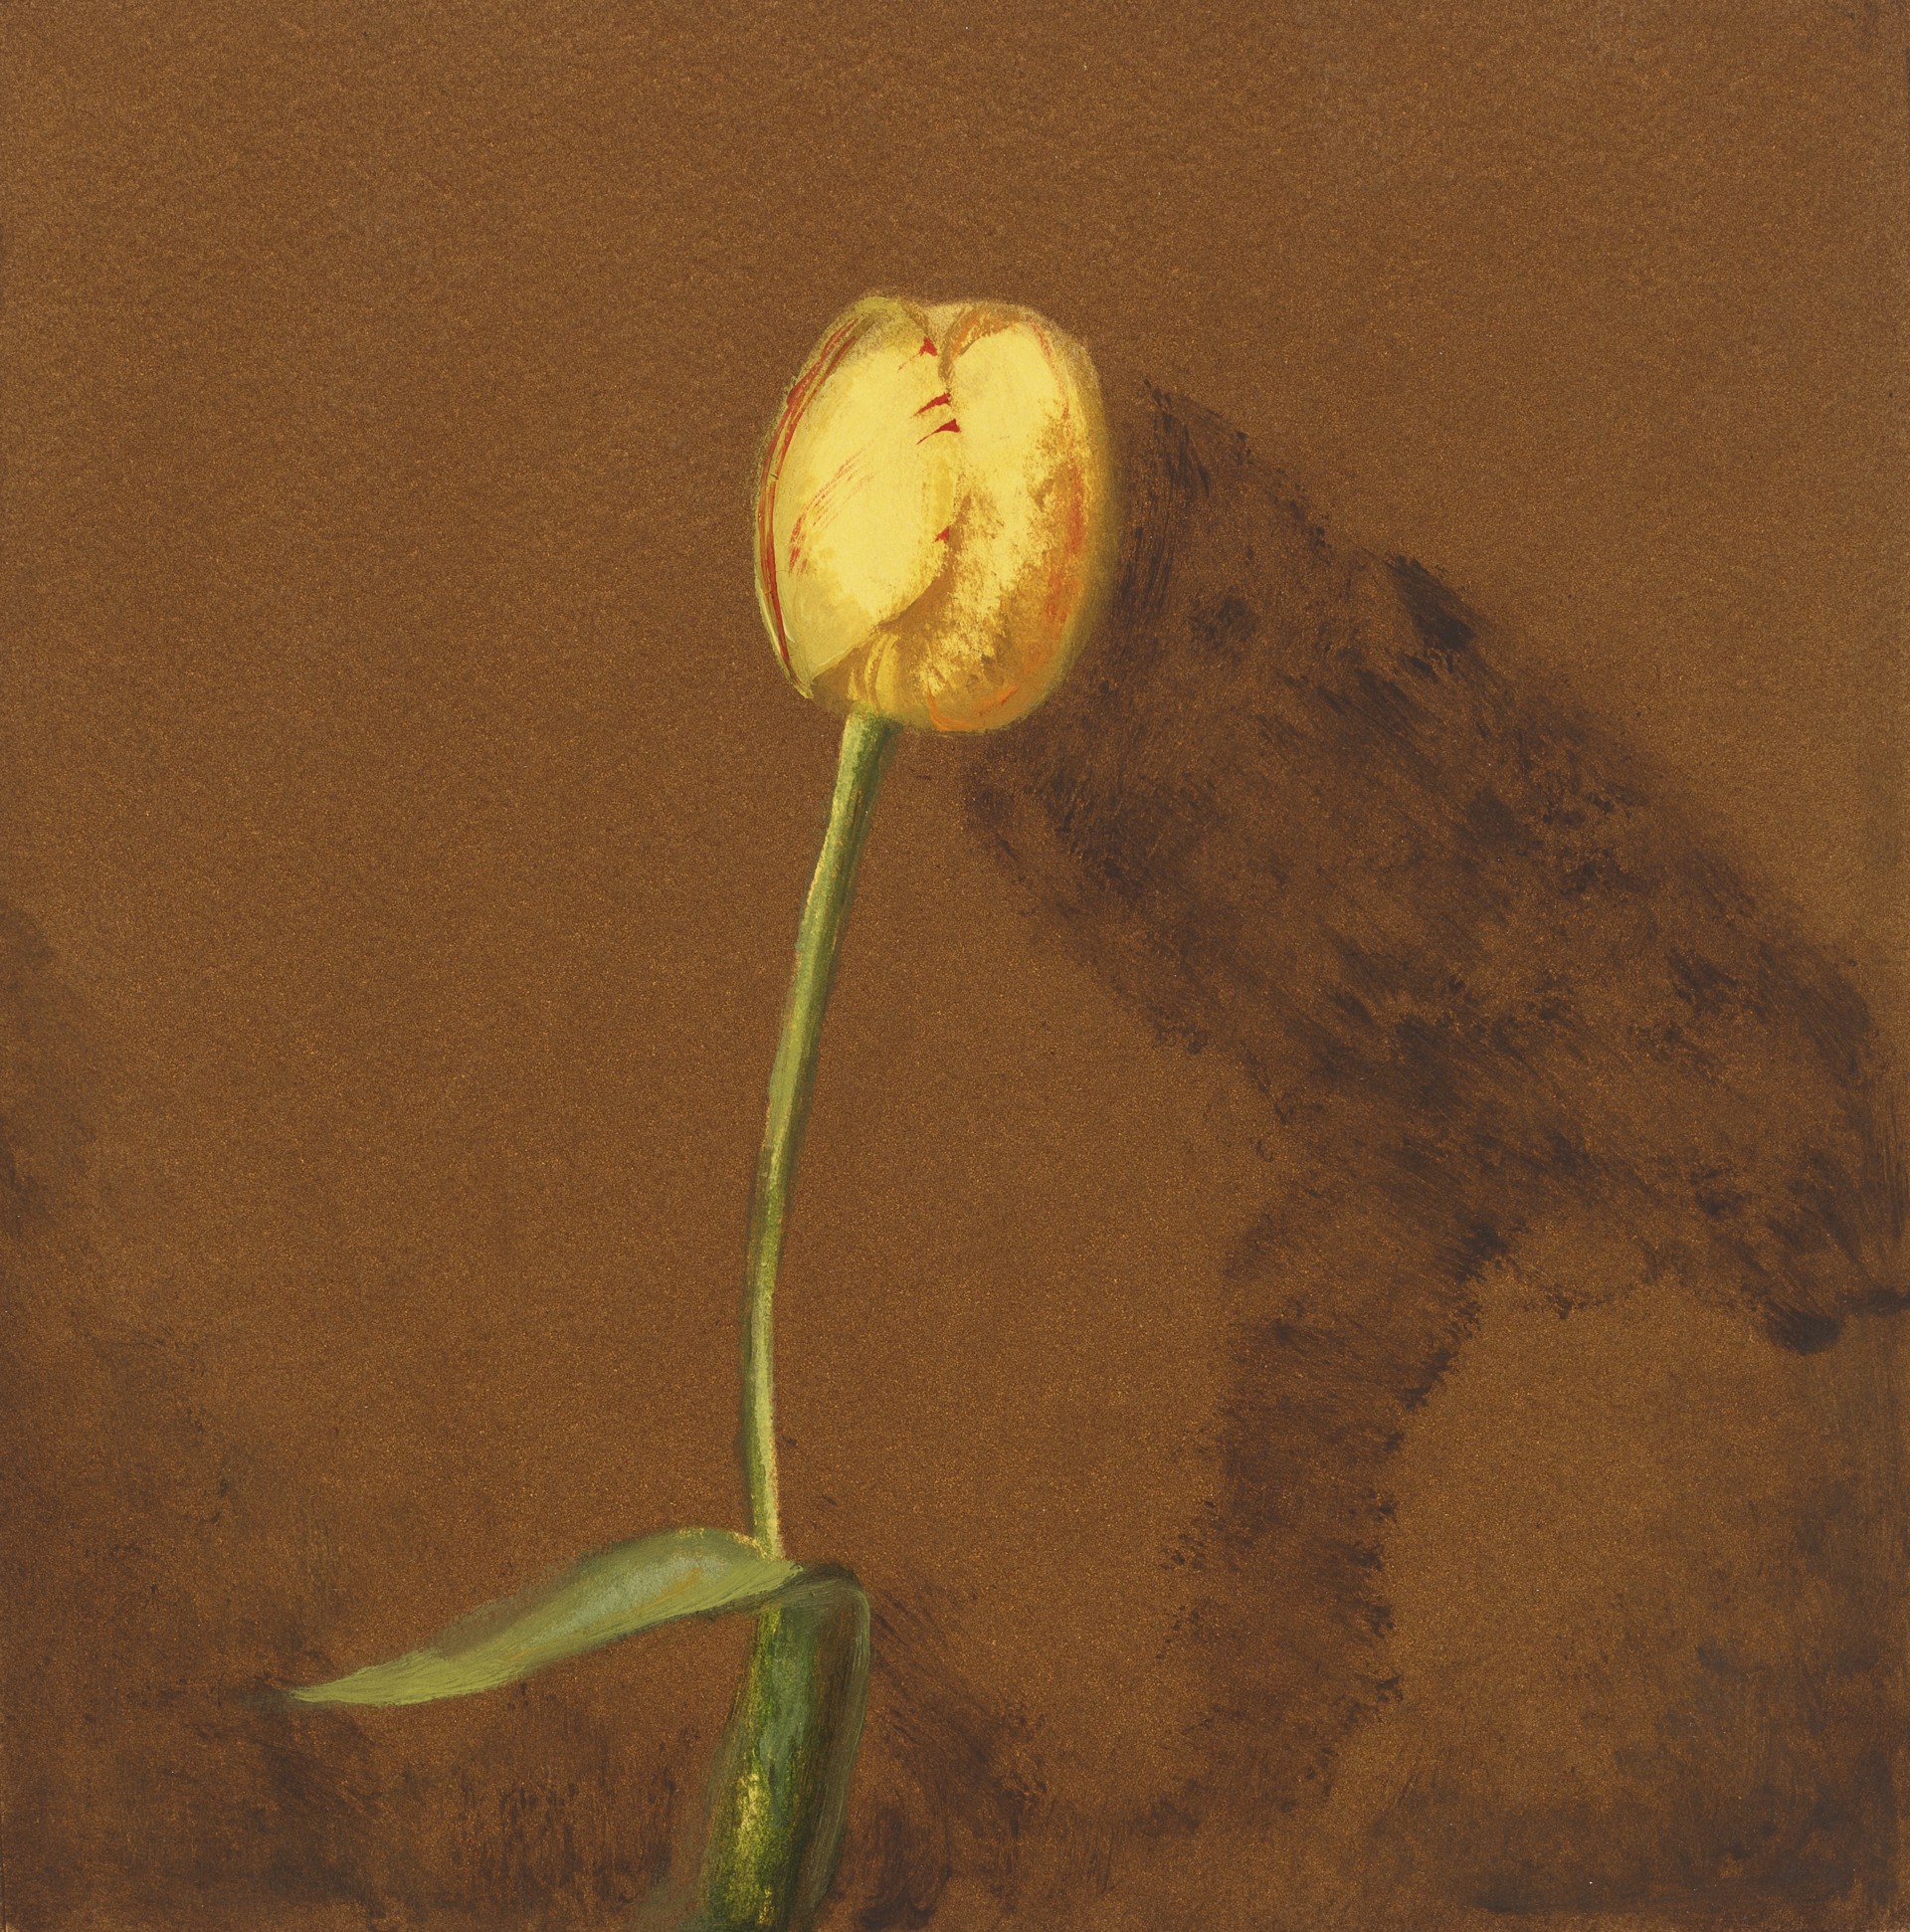 Golden Rembrandt Tulip by Carol Mothner